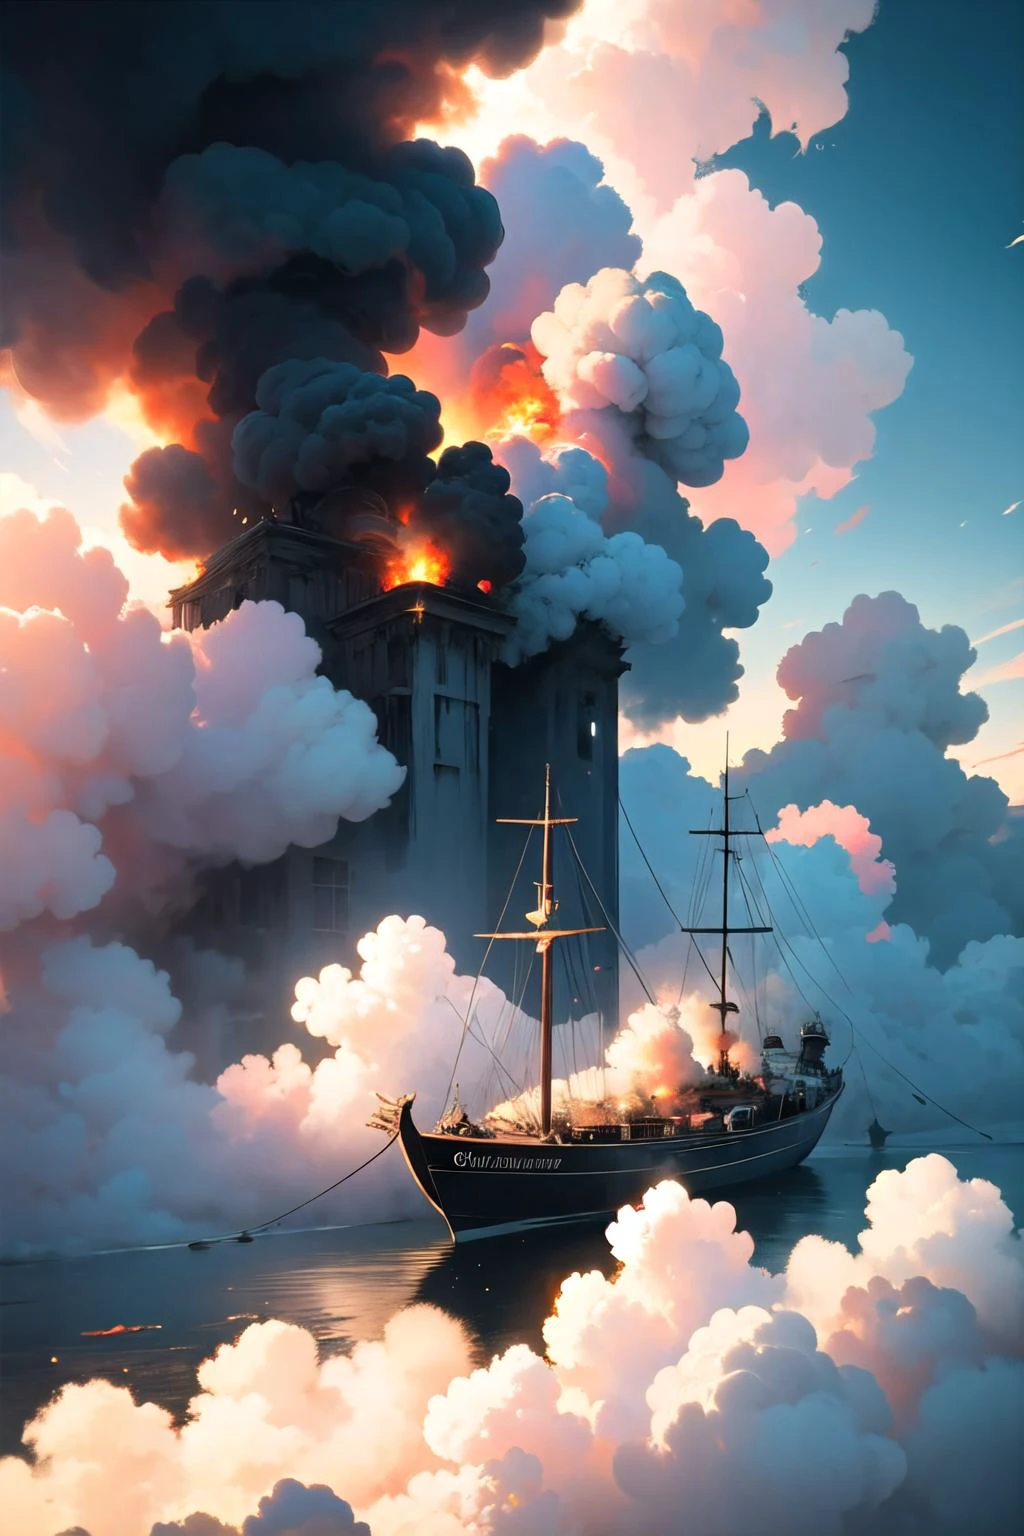 coloré_fumées, Fumée, fumées, Fumée trail,
Pixel art 16 bits, composition épique d&#39;un explorateur dans un (Bateau:1.2) atteindre une île dans les nuages, par les studios Ghibli, image cinématographique, hdr,